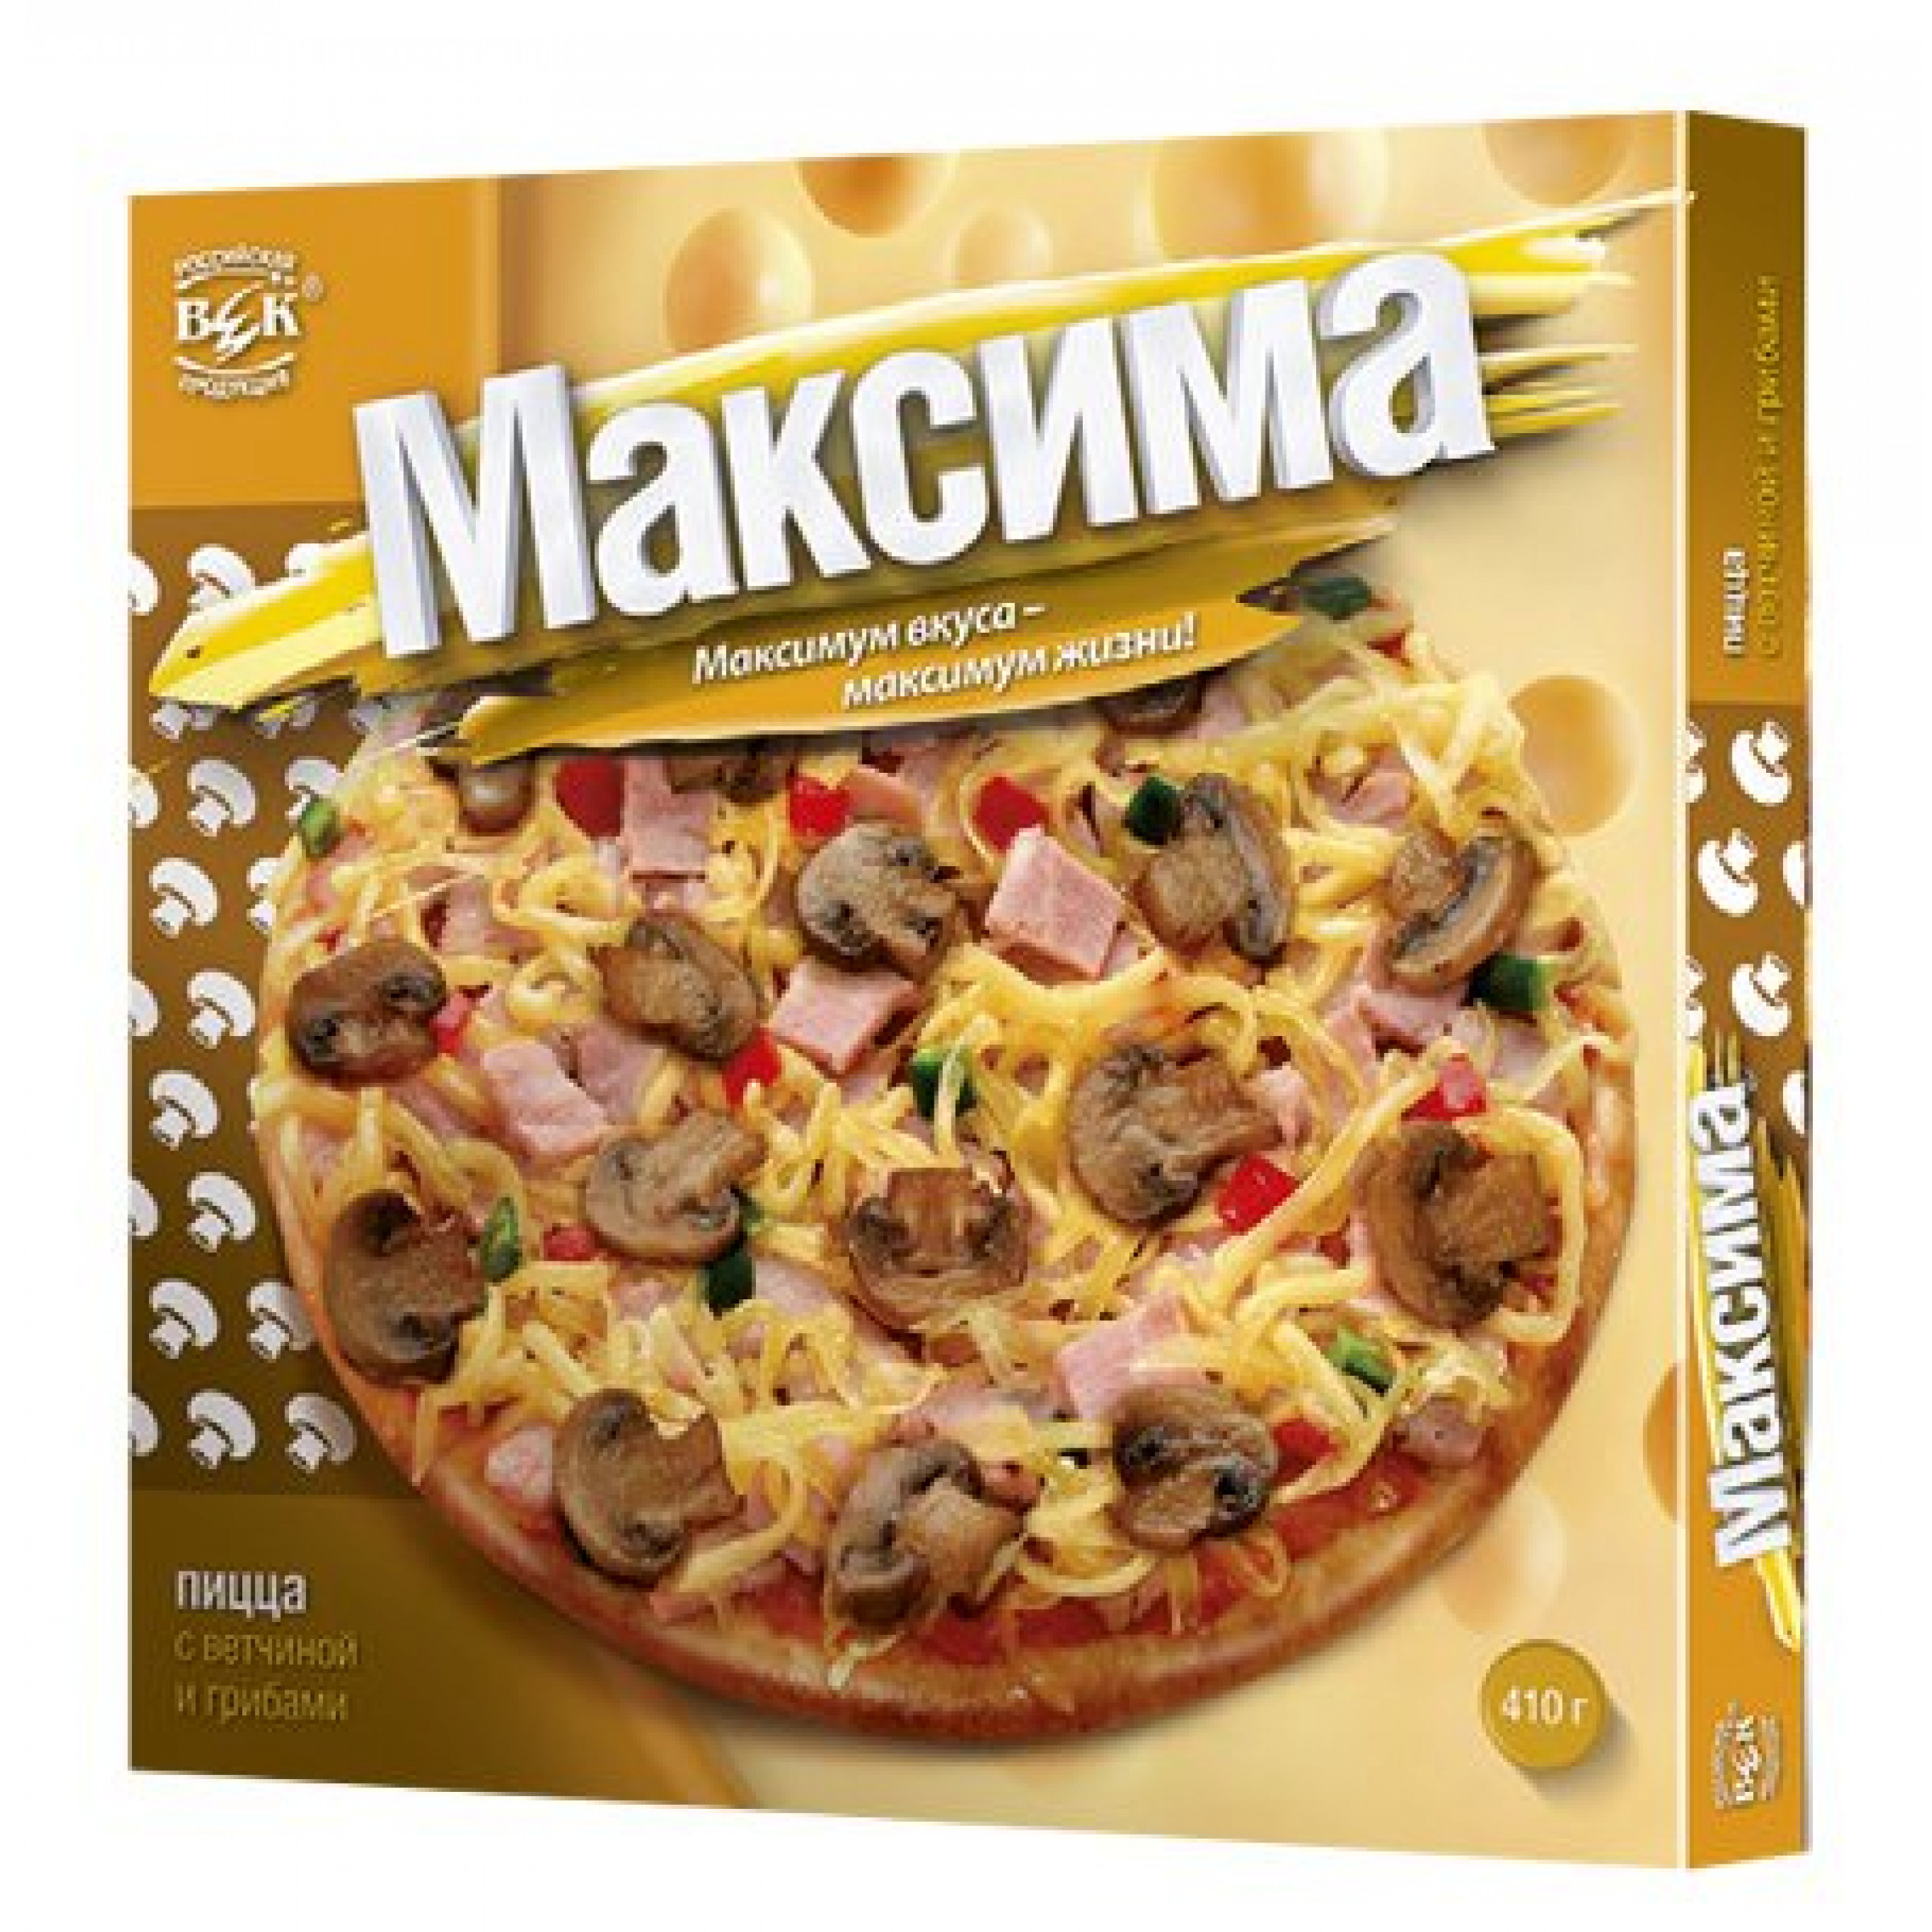 Пицца Максима с ветчиной и грибами в коробочке, 410гр